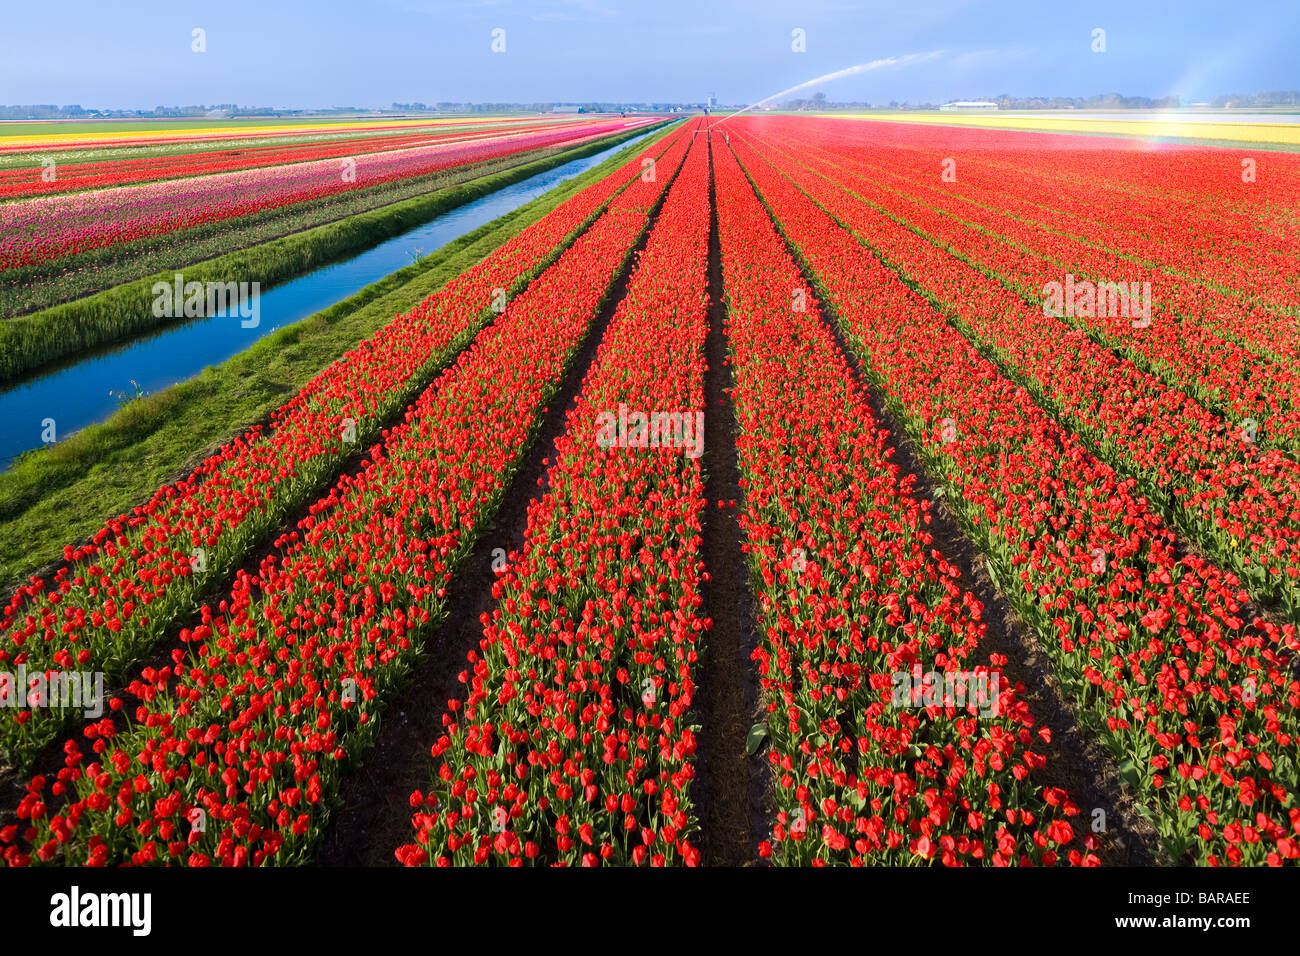 Dutch champs de tulipes, tulipes en rangées près d'Alkmaar, Pays-Bas, avec canal et de l'eau pour l'irrigation sprinkleur. Pays-bas Nederland. Banque D'Images